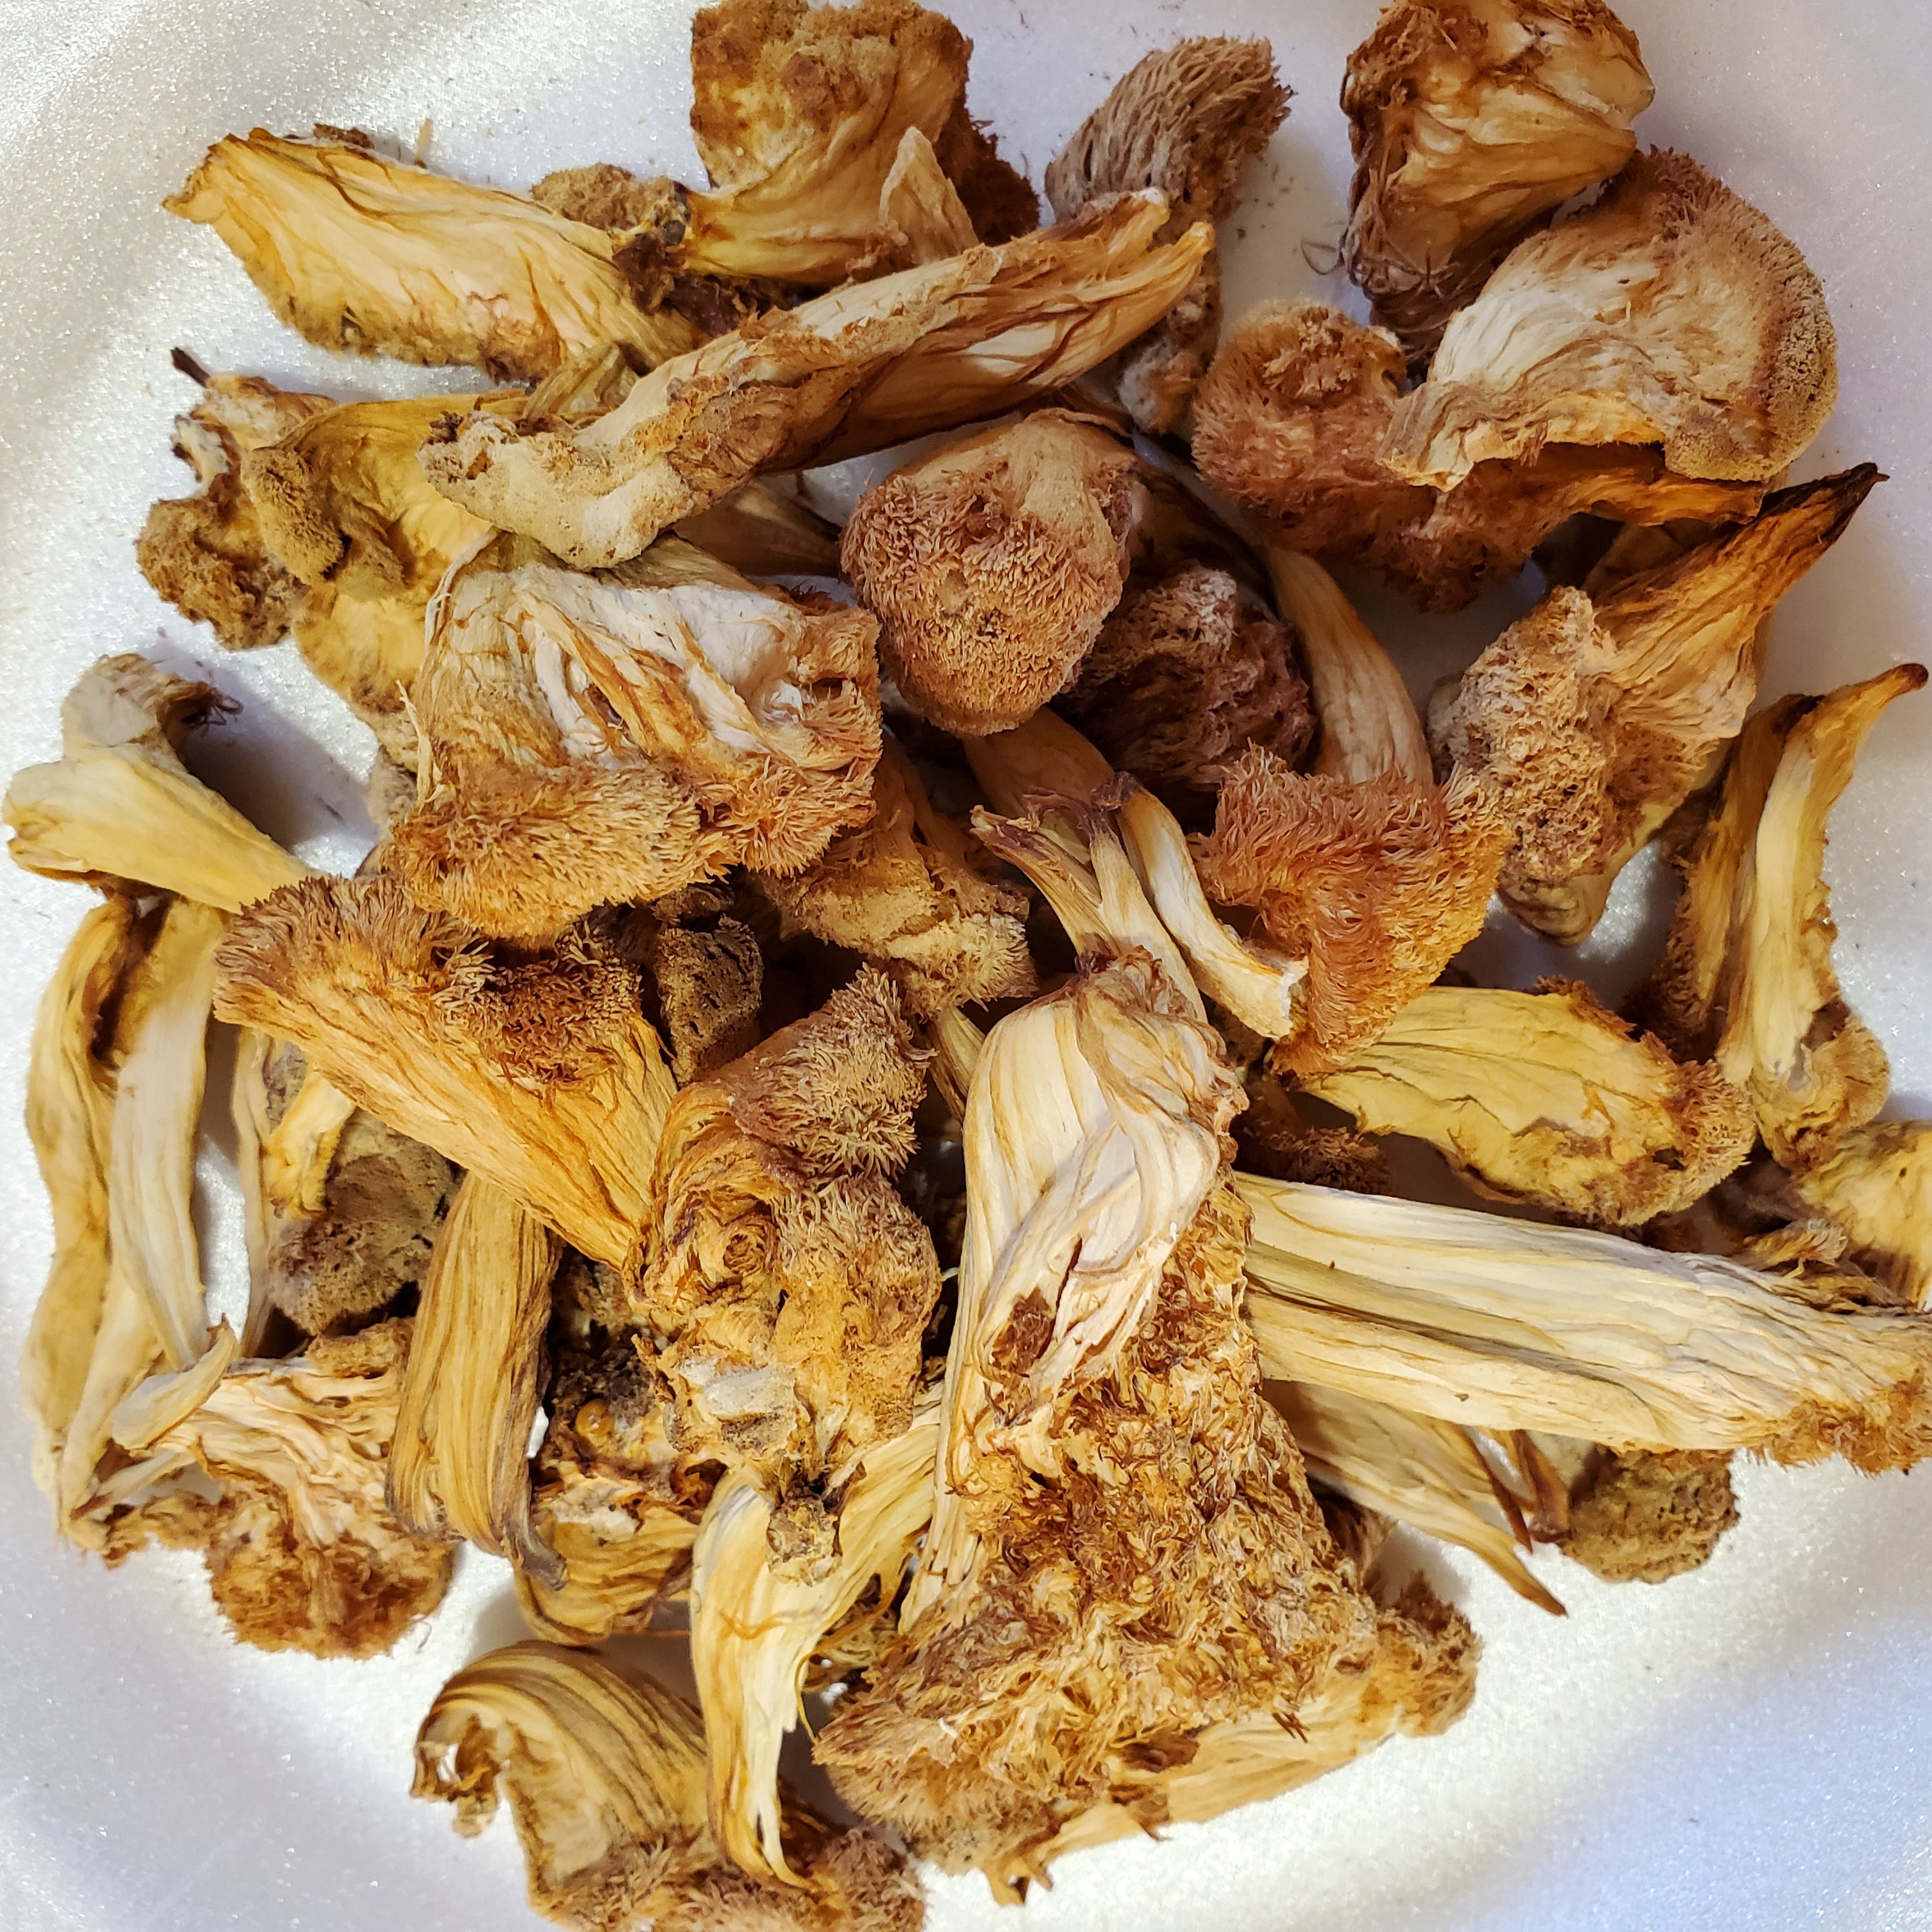 4 Ounce Dried Organic Lion's Maine Mushrooms (Pom Pom)